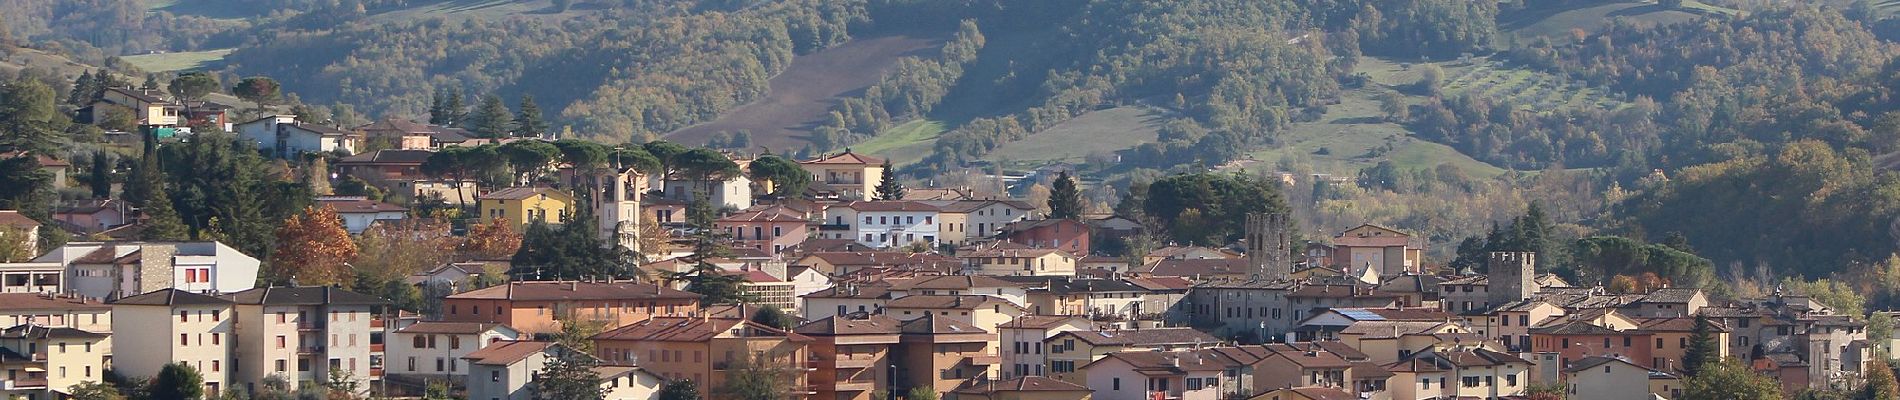 Randonnée A pied Gubbio - Via di Francesco - Tappa 9 Eremo di San Pietro in Vigneto-Valfabbrica - Photo